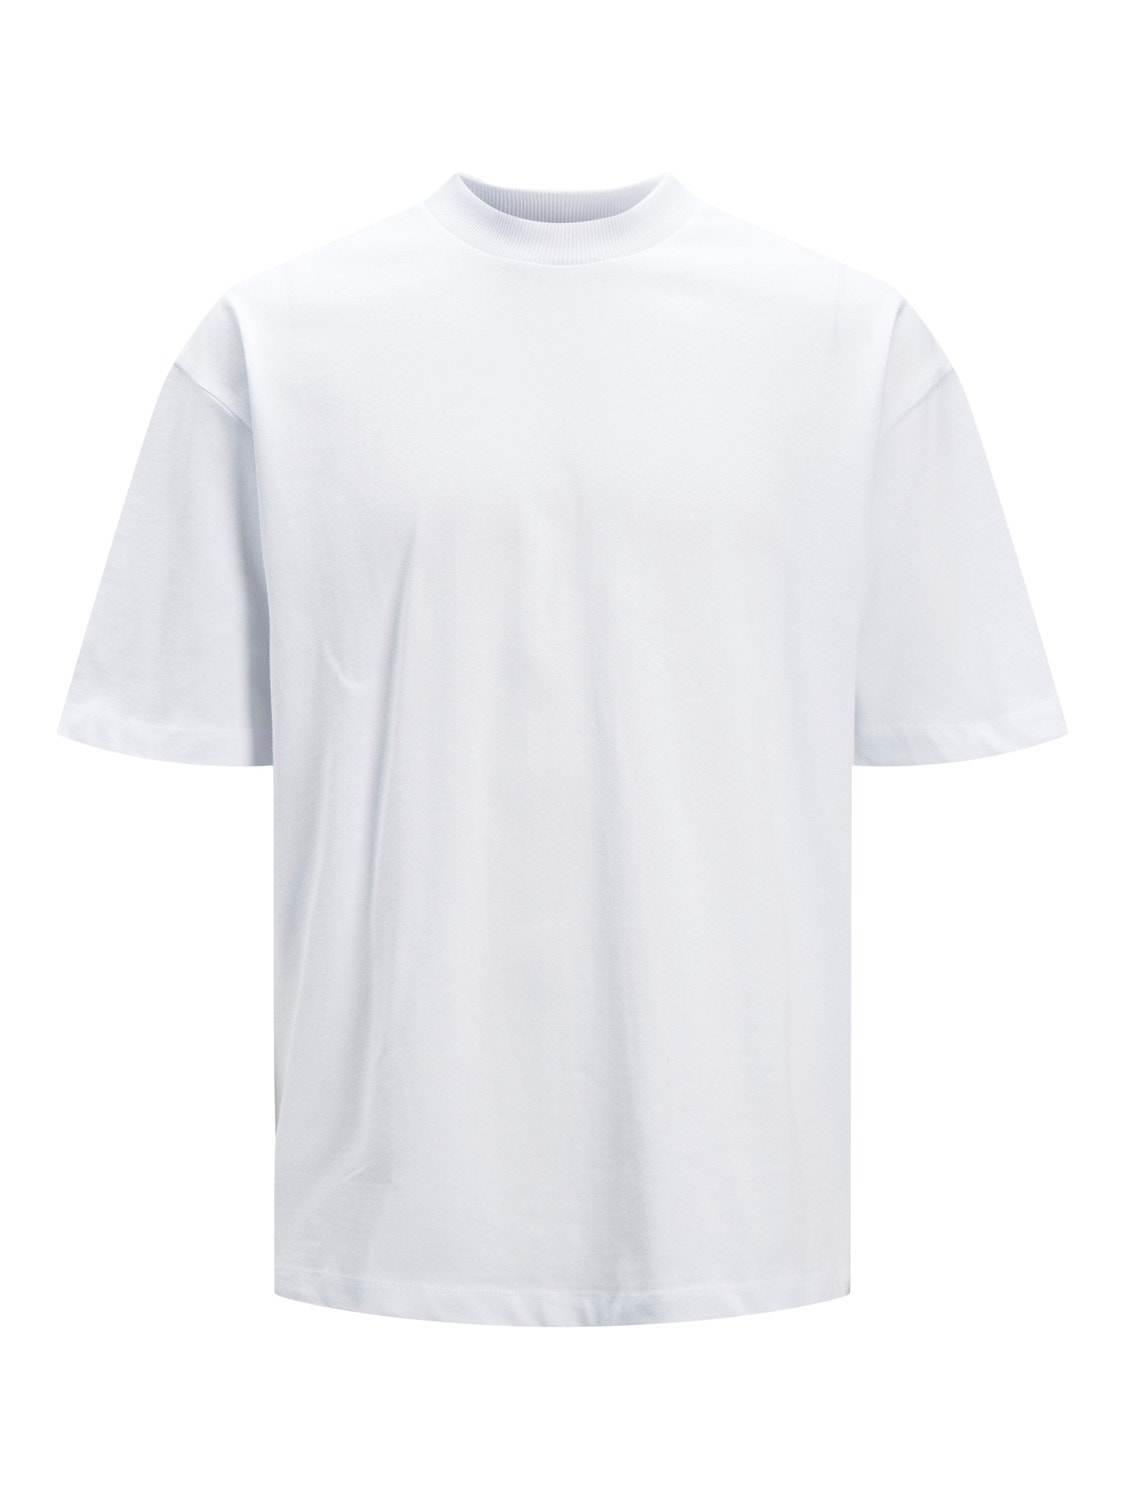 Jack & Jones Plain O-Neck T-shirt -White - 12204679